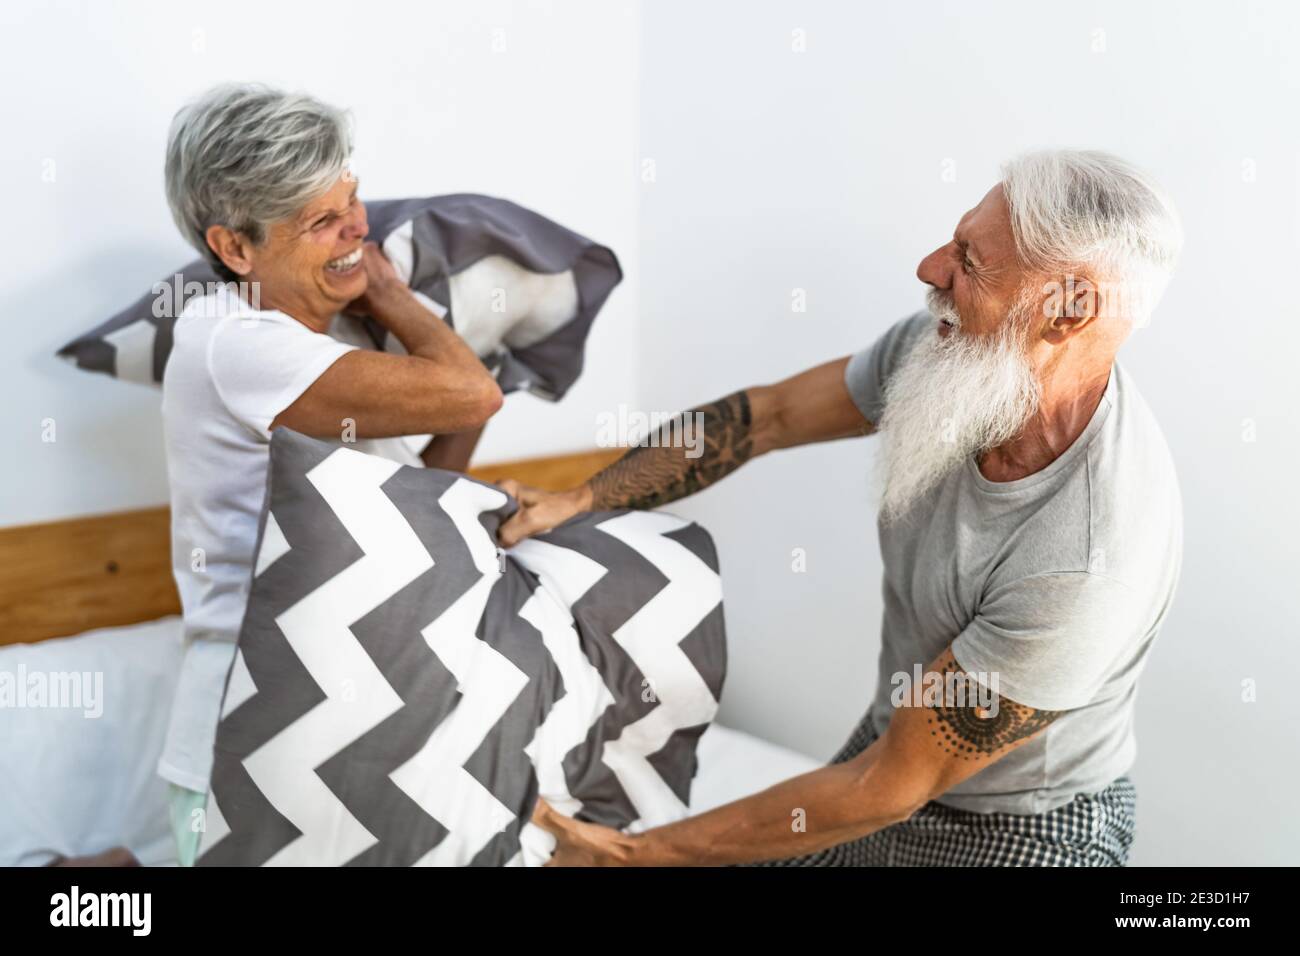 Glückliches Seniorenpaar, das Spaß beim Kämpfen mit Kissen im Bett hatte - Ältere Lebensweise und Liebesbeziehung Konzept Stockfoto